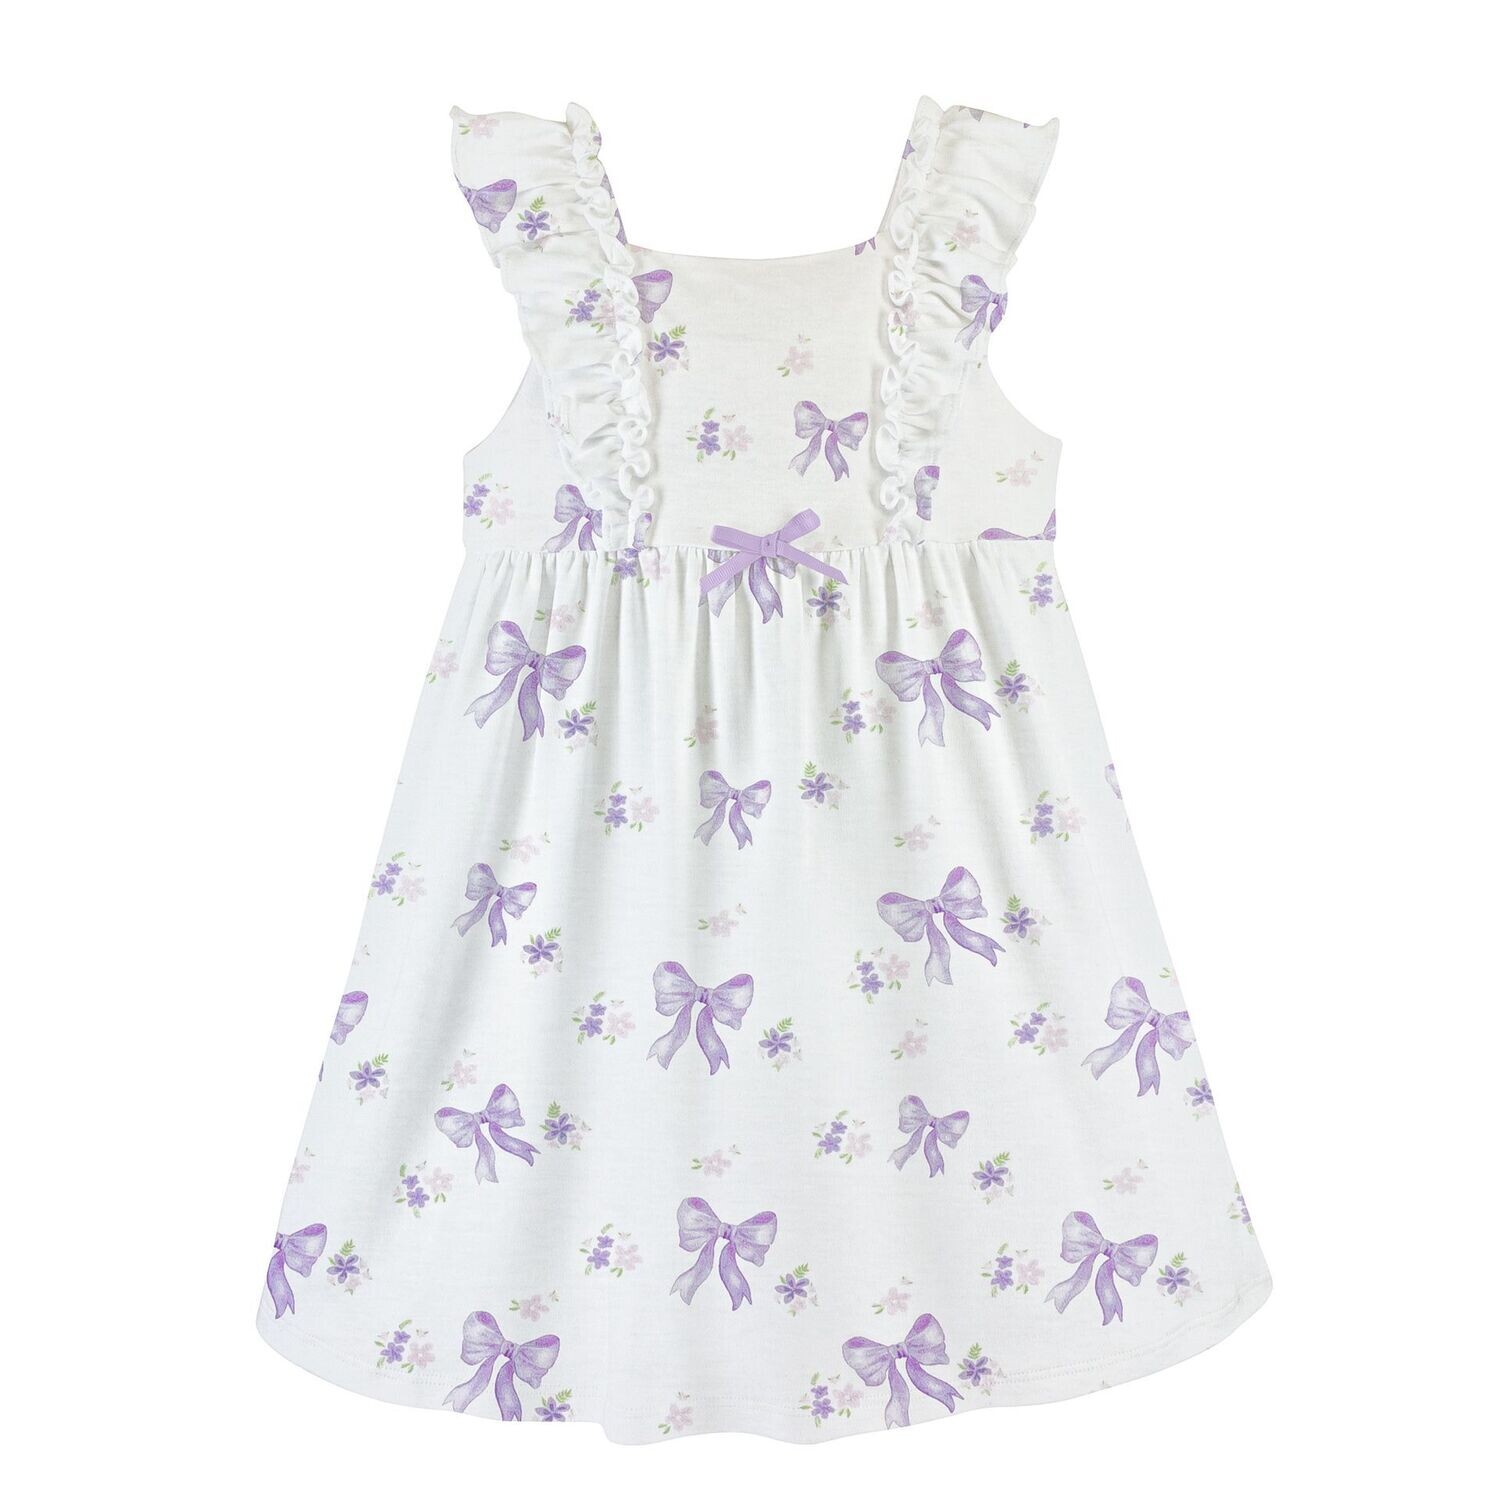 Lavender Bows Dress, Size: 2